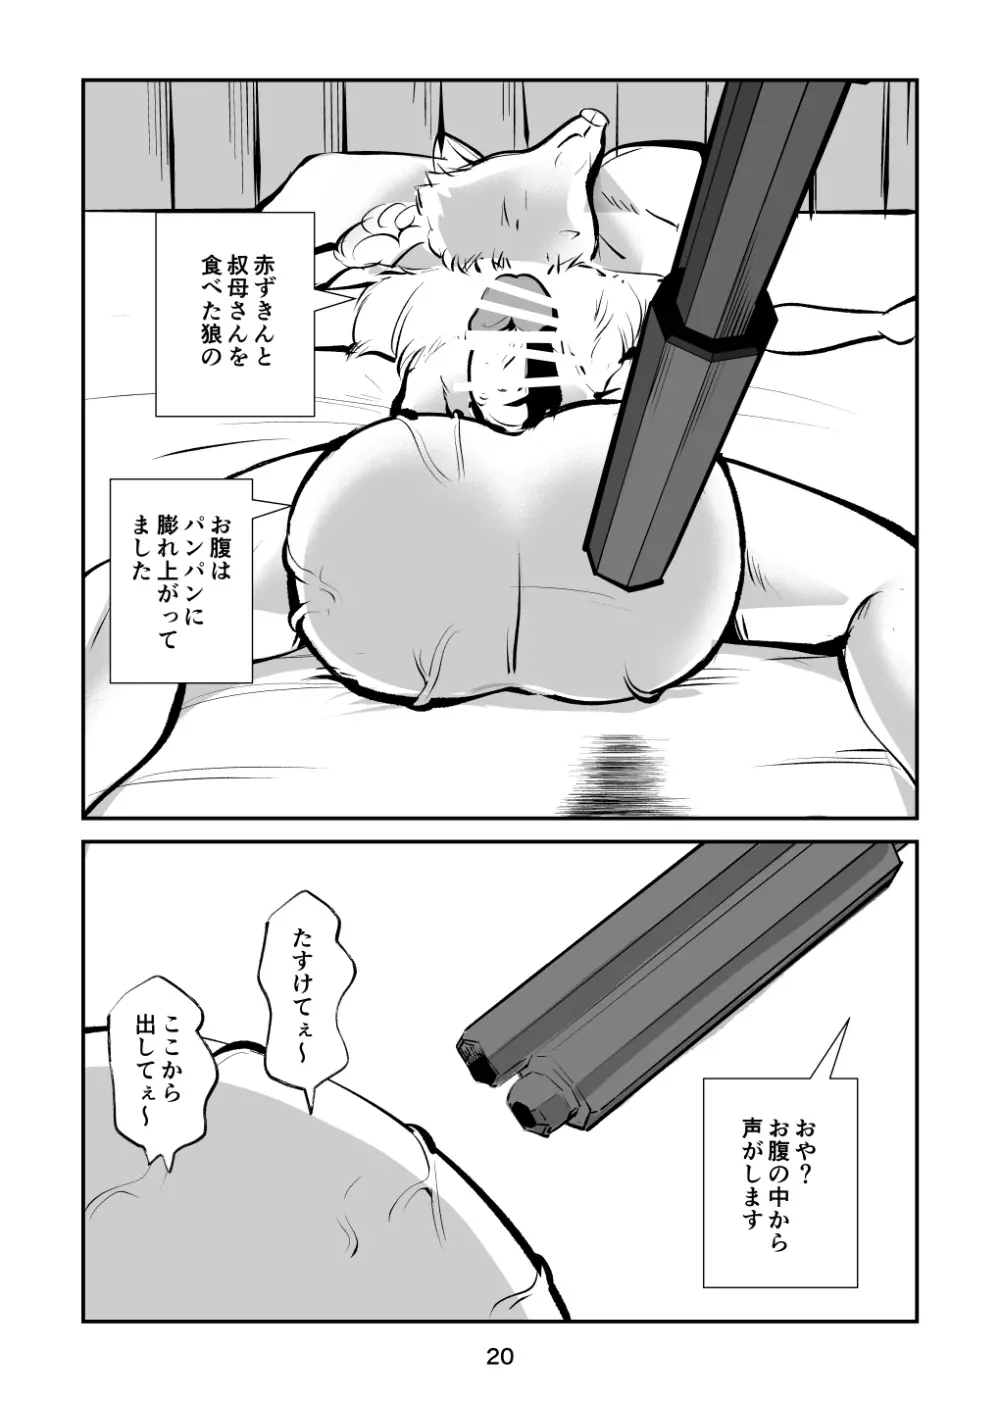 玉蹴り赤ずきん - page20